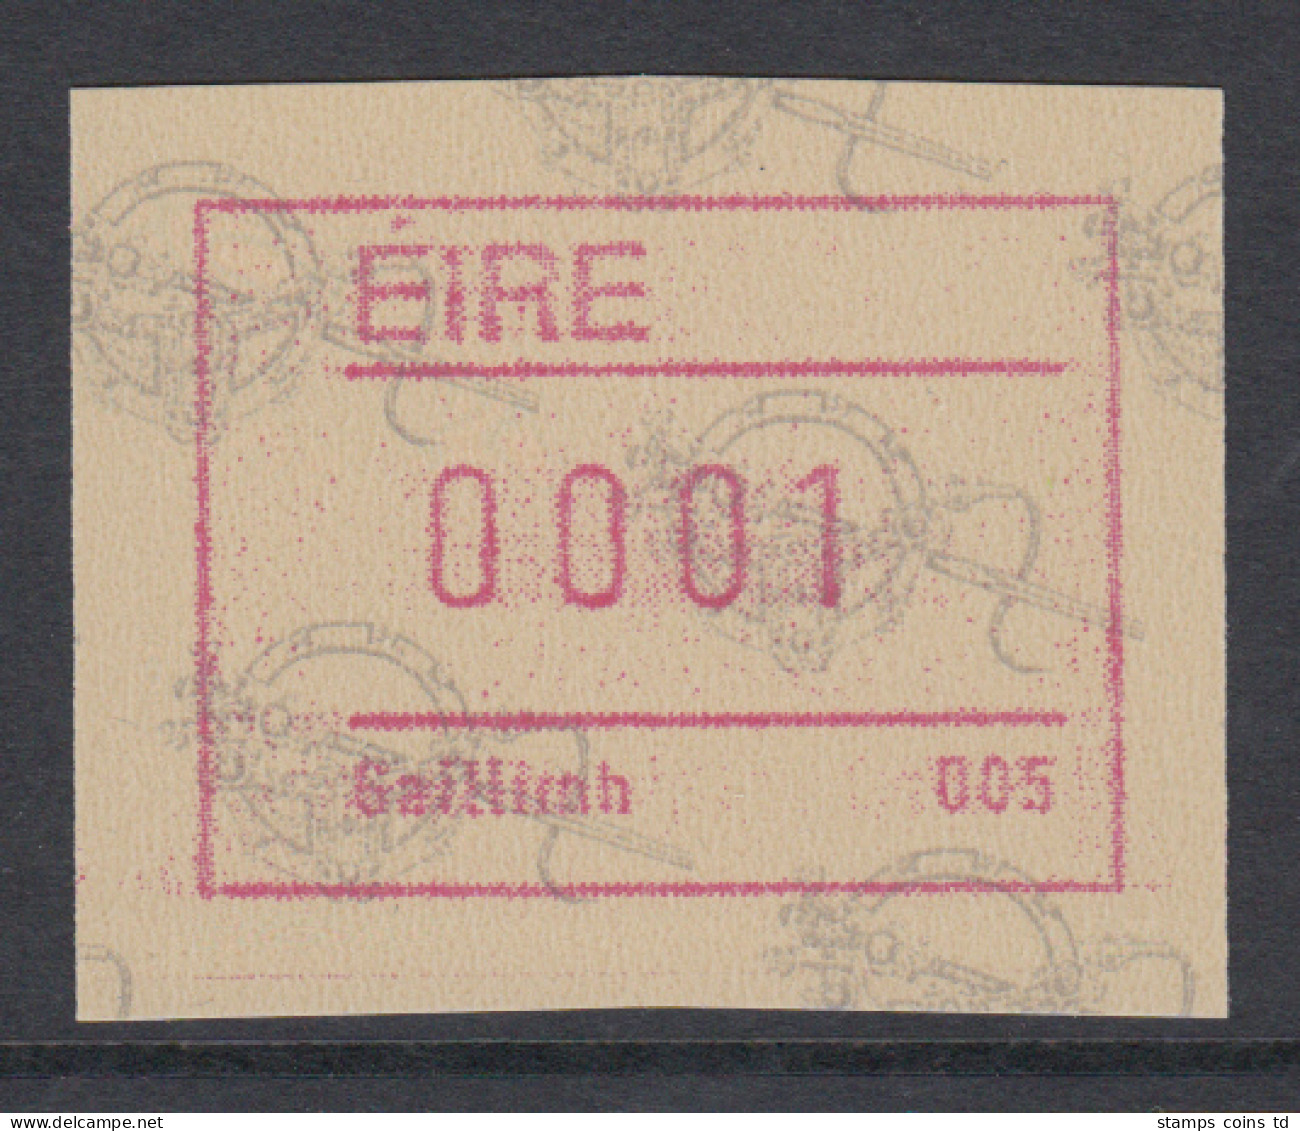 Irland Frama-ATM  2.Ausgabe 1992 Tara-Brosche,  Mi.-Nr. 4 **  - Vignettes D'affranchissement (Frama)